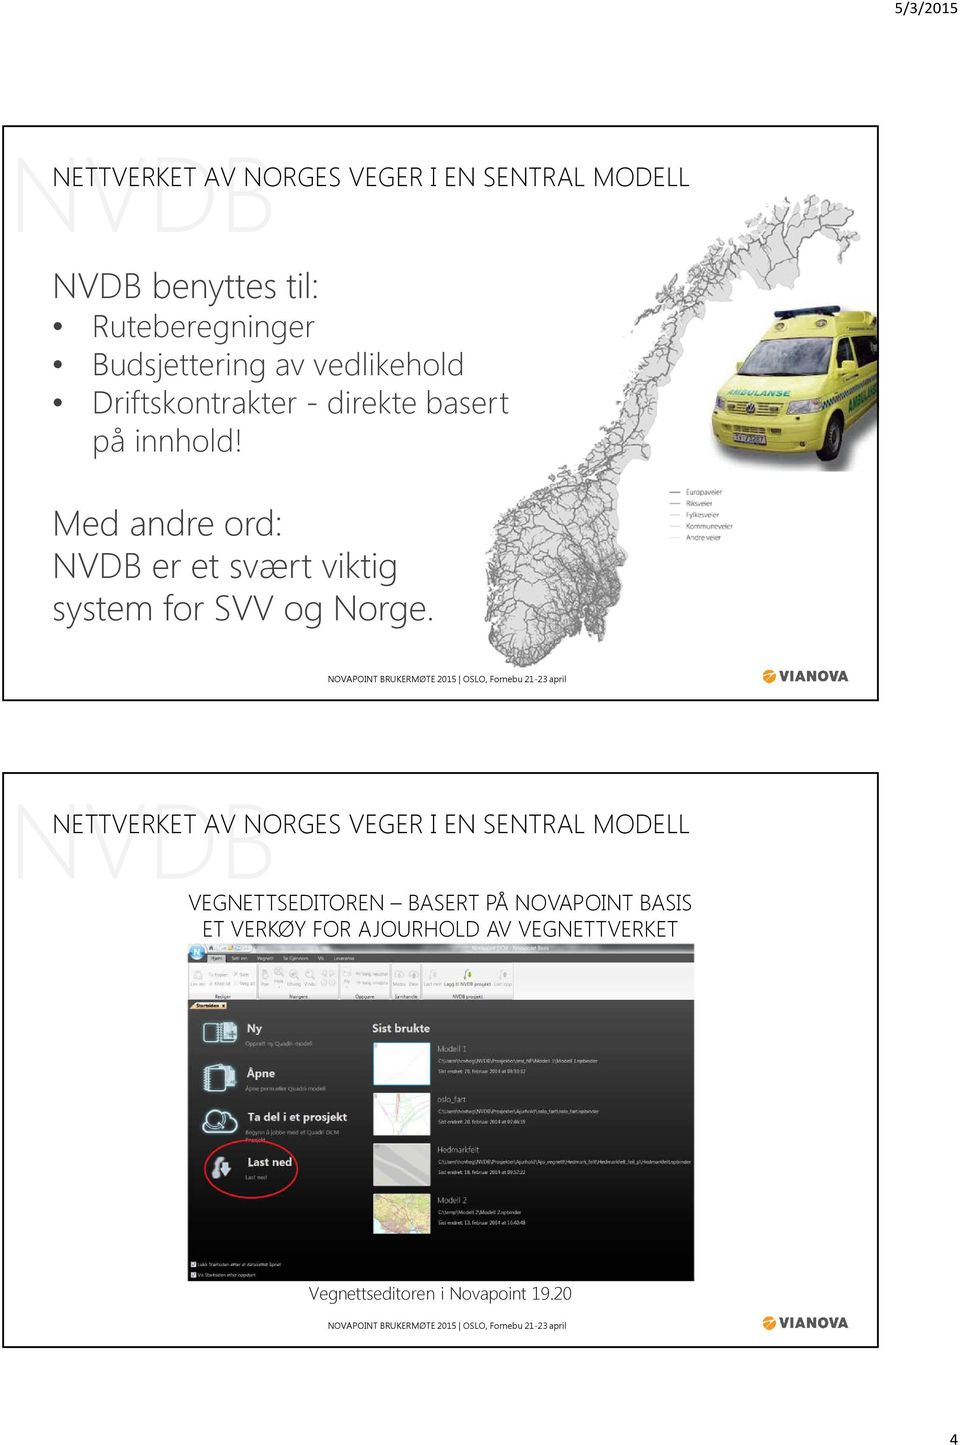 Med andre ord: NVDB er et svært viktig system for SVV og Norge.